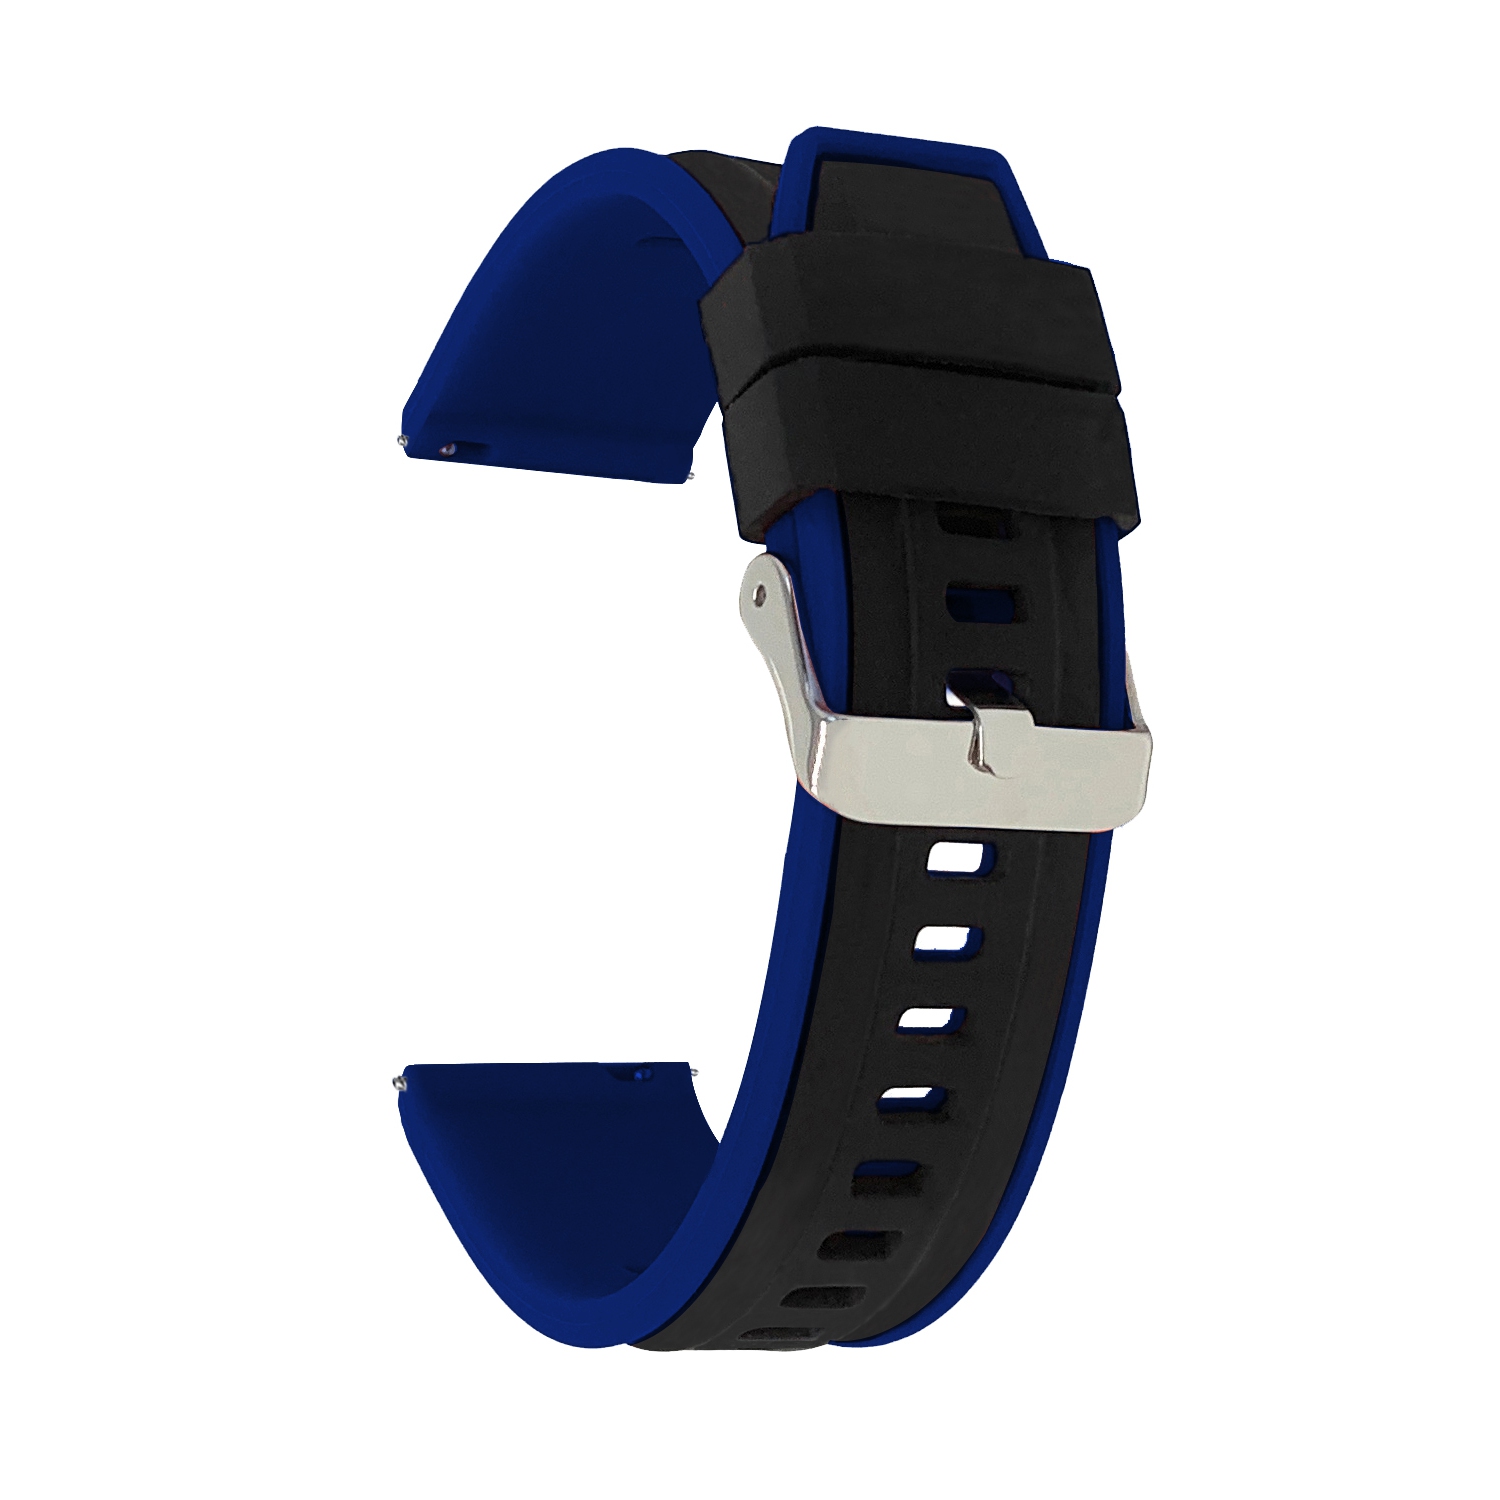 Bandini Quick Release Two-Tone Rubber Silicone Smart Watch Strap For Mobvoi Ticwatch E, E3, C2 - 20mm, Black / Blue / Silver Buckle